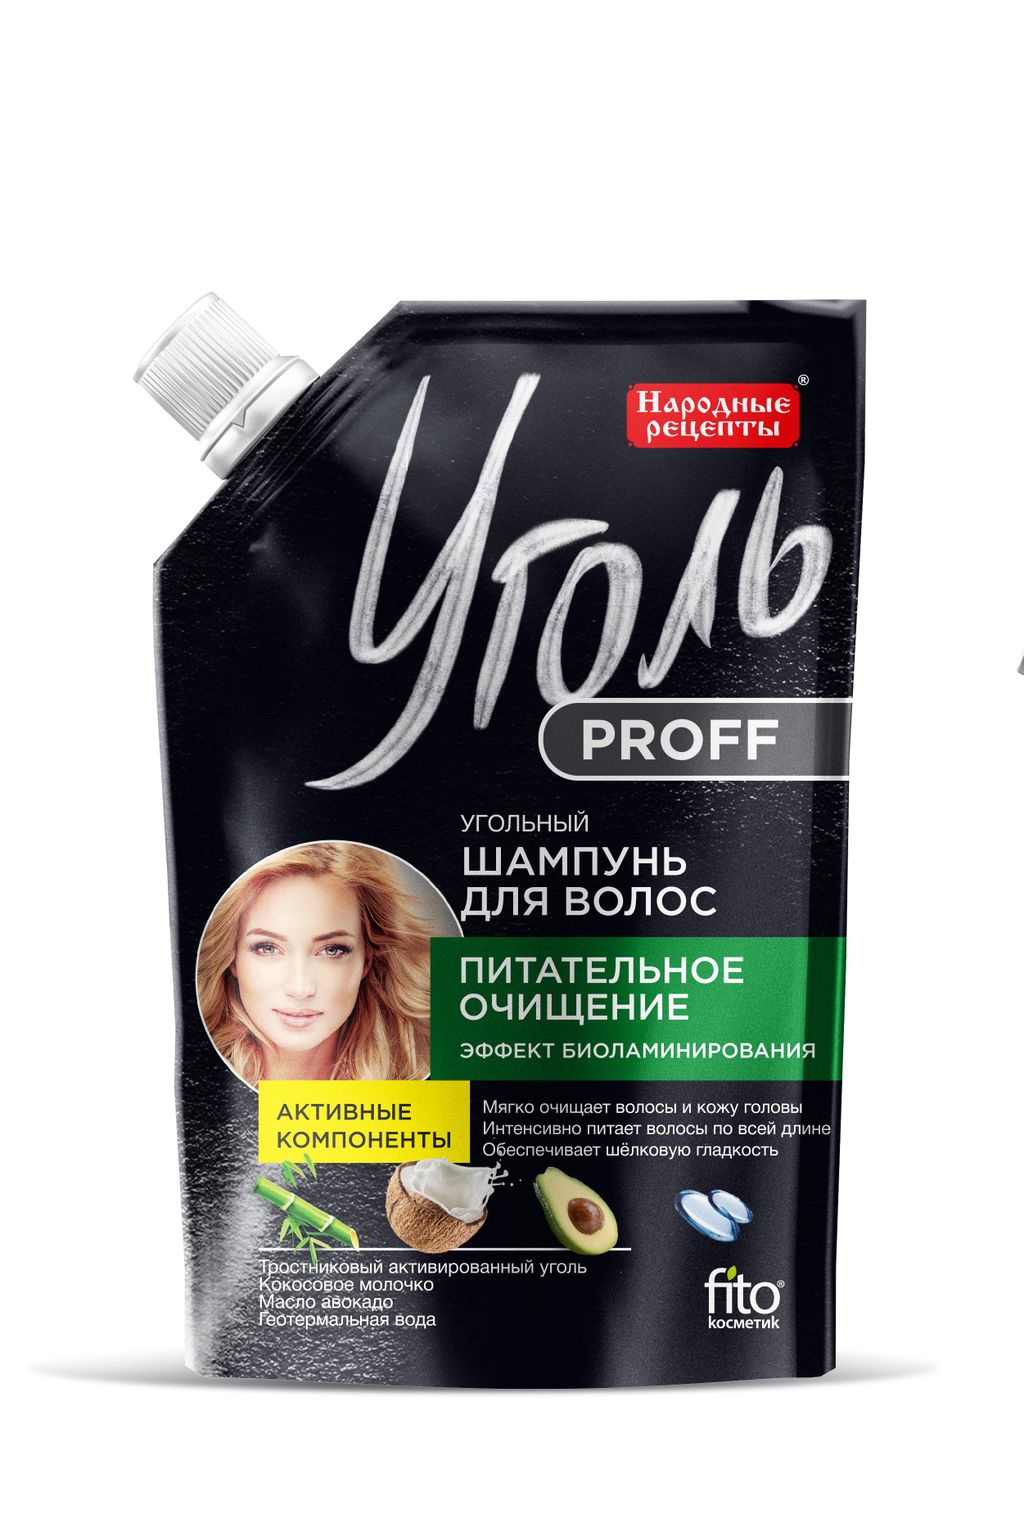 фото упаковки Уголь Proff Угольный шампунь для волос